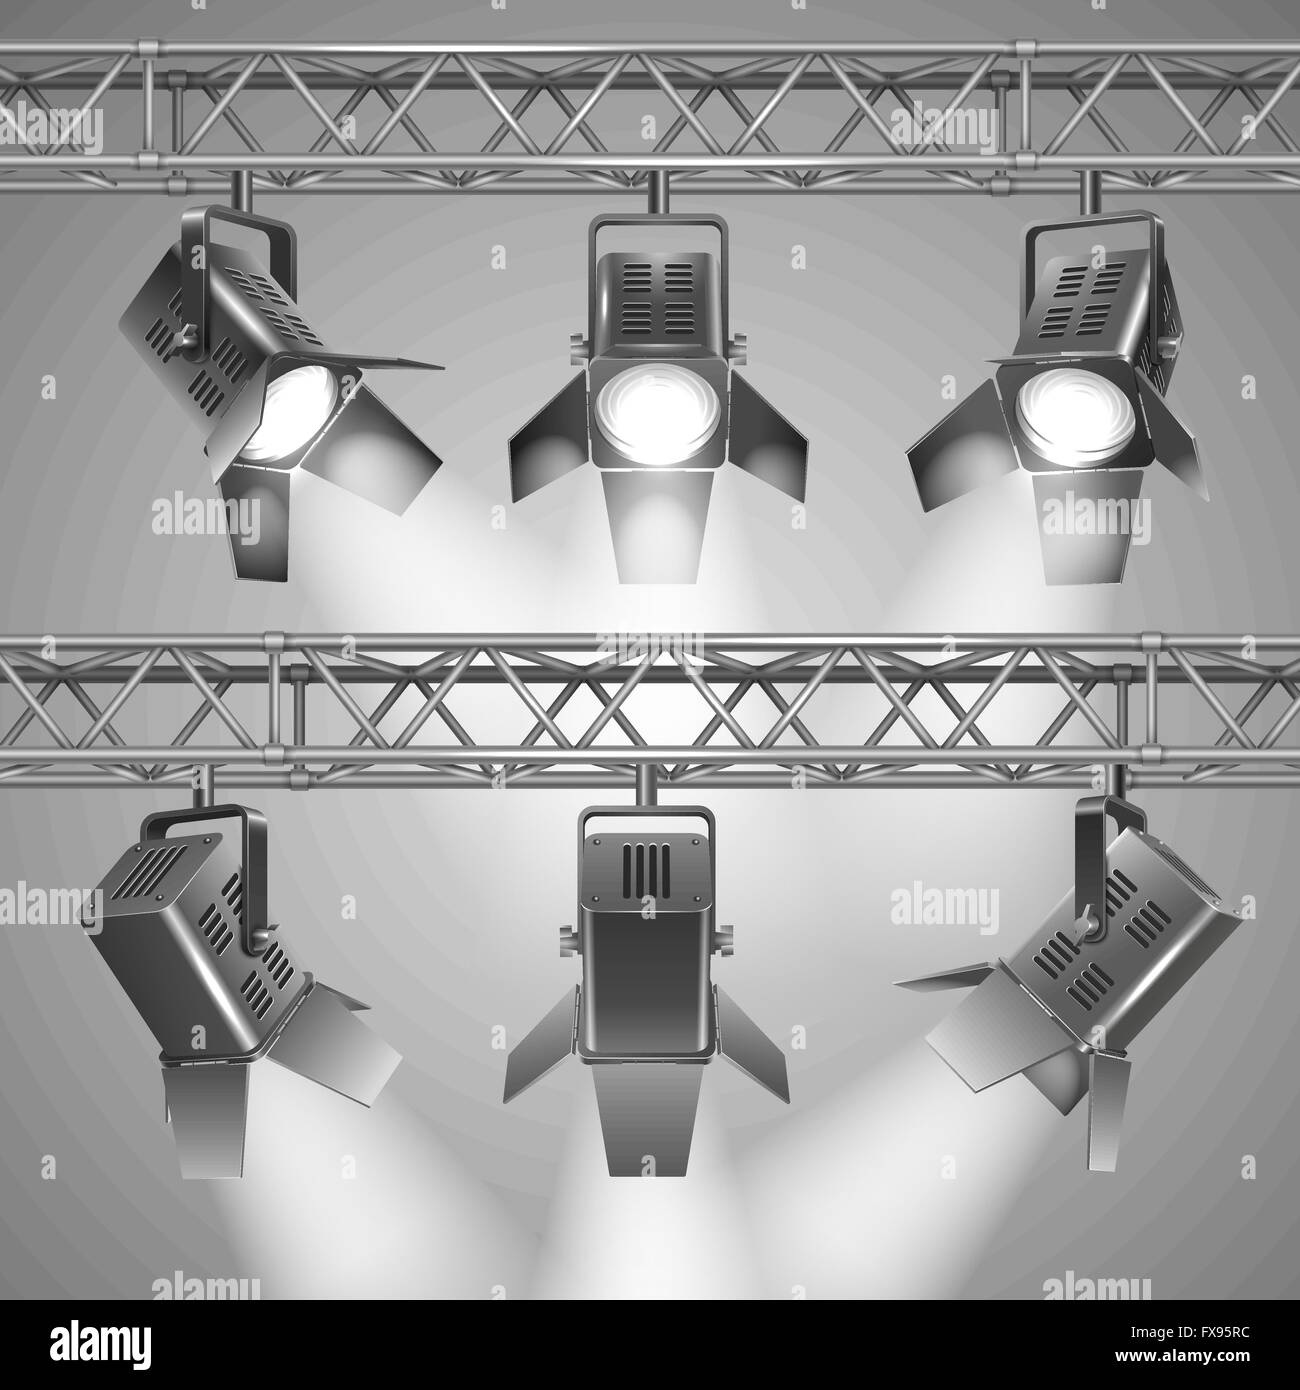 Projector lamp Banque d'images noir et blanc - Alamy